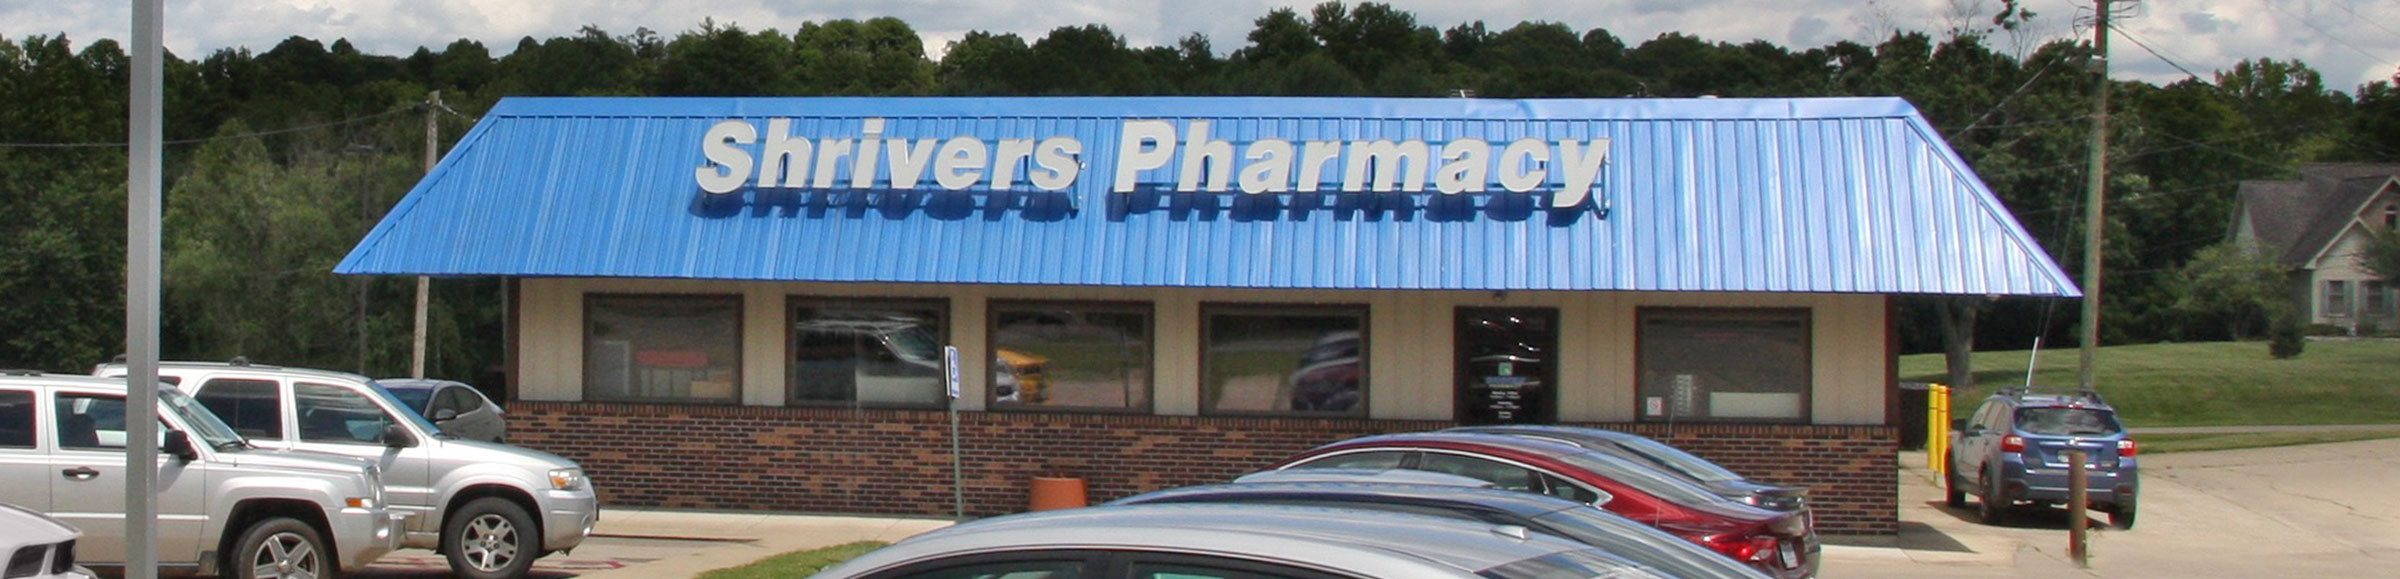 Shrivers-Pharmacy-530-N-Market-St-McArthur-Oh-45651-Store